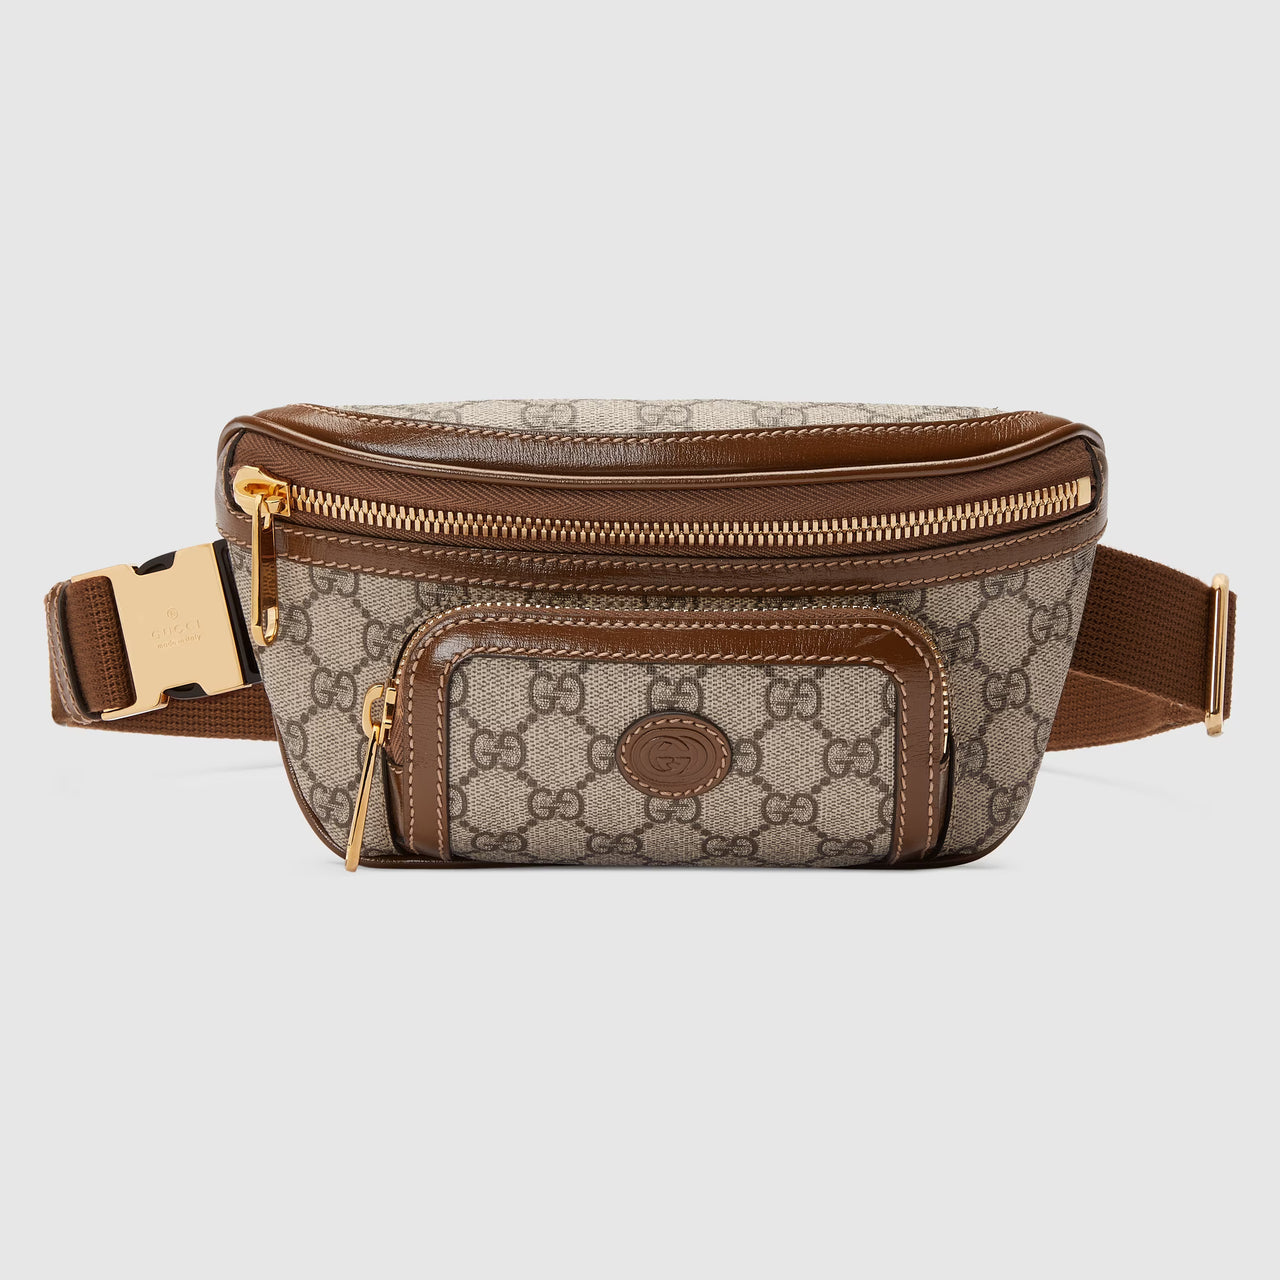 Gucci Belt Bag with Interlocking G (Beige & Ebony)